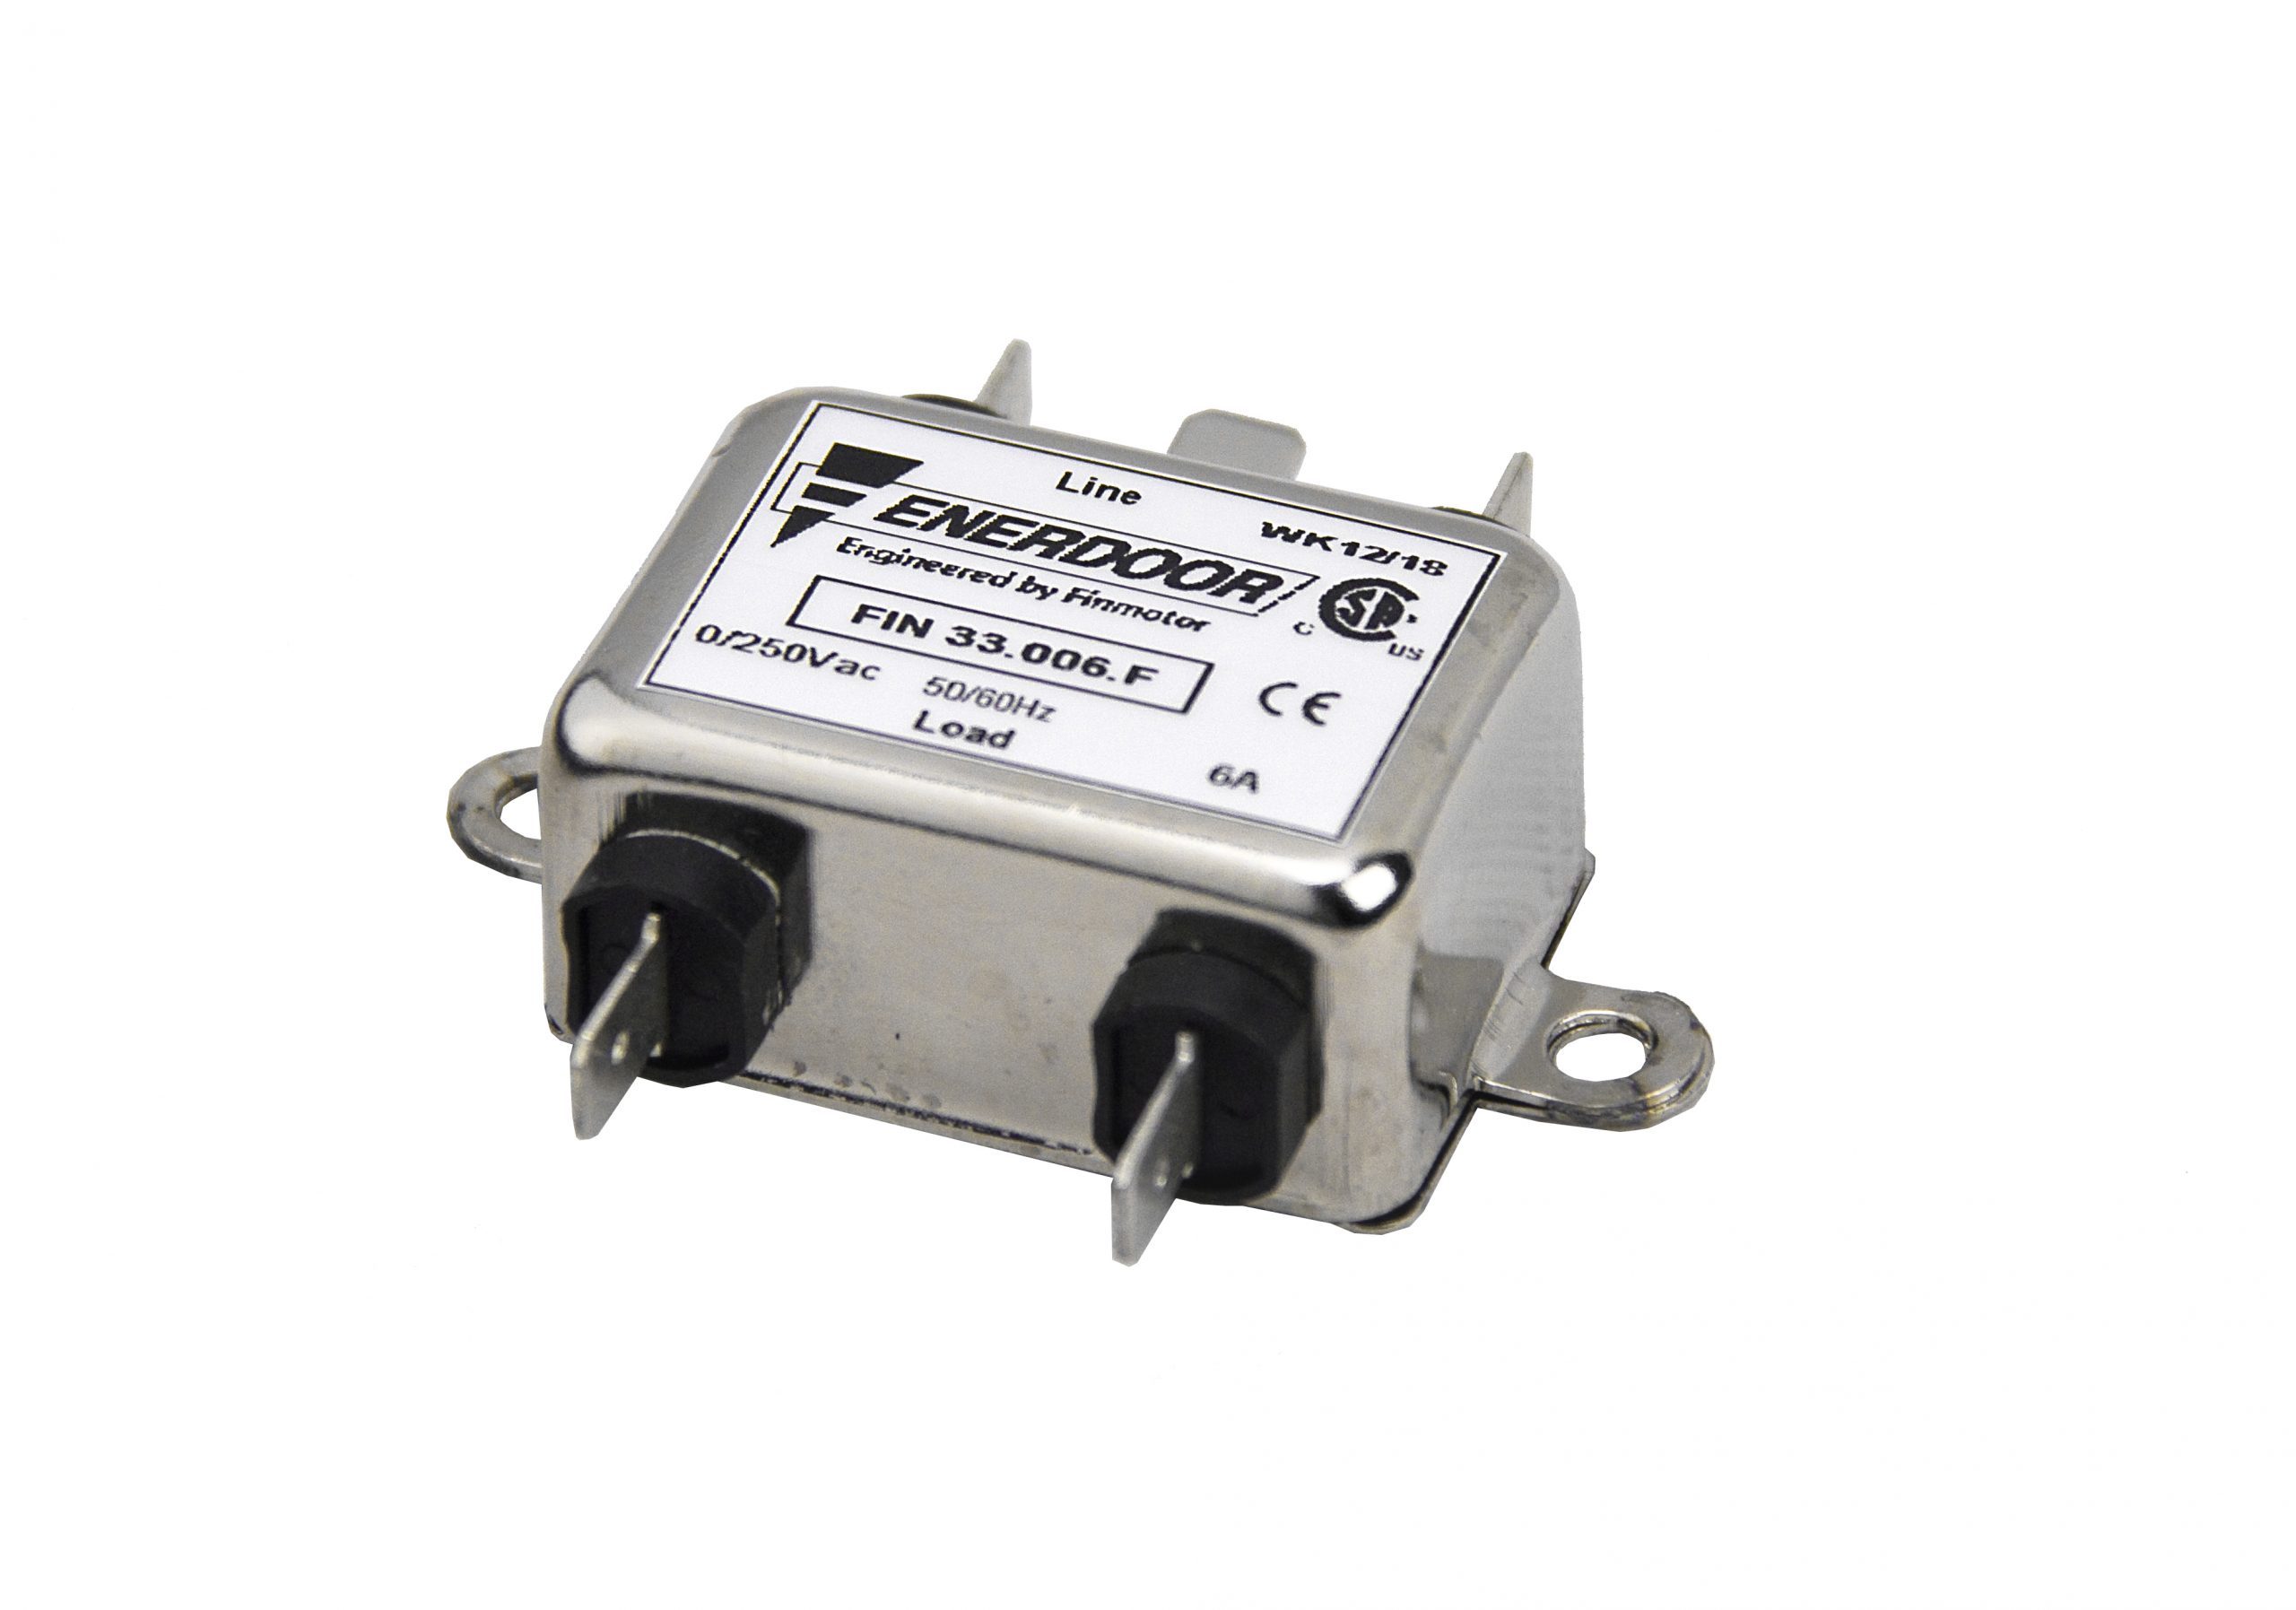 Details about   10a 0.47 115v 250v SPC 9738 EMI RFI Switching Transient Line Filter DP C L 1 2